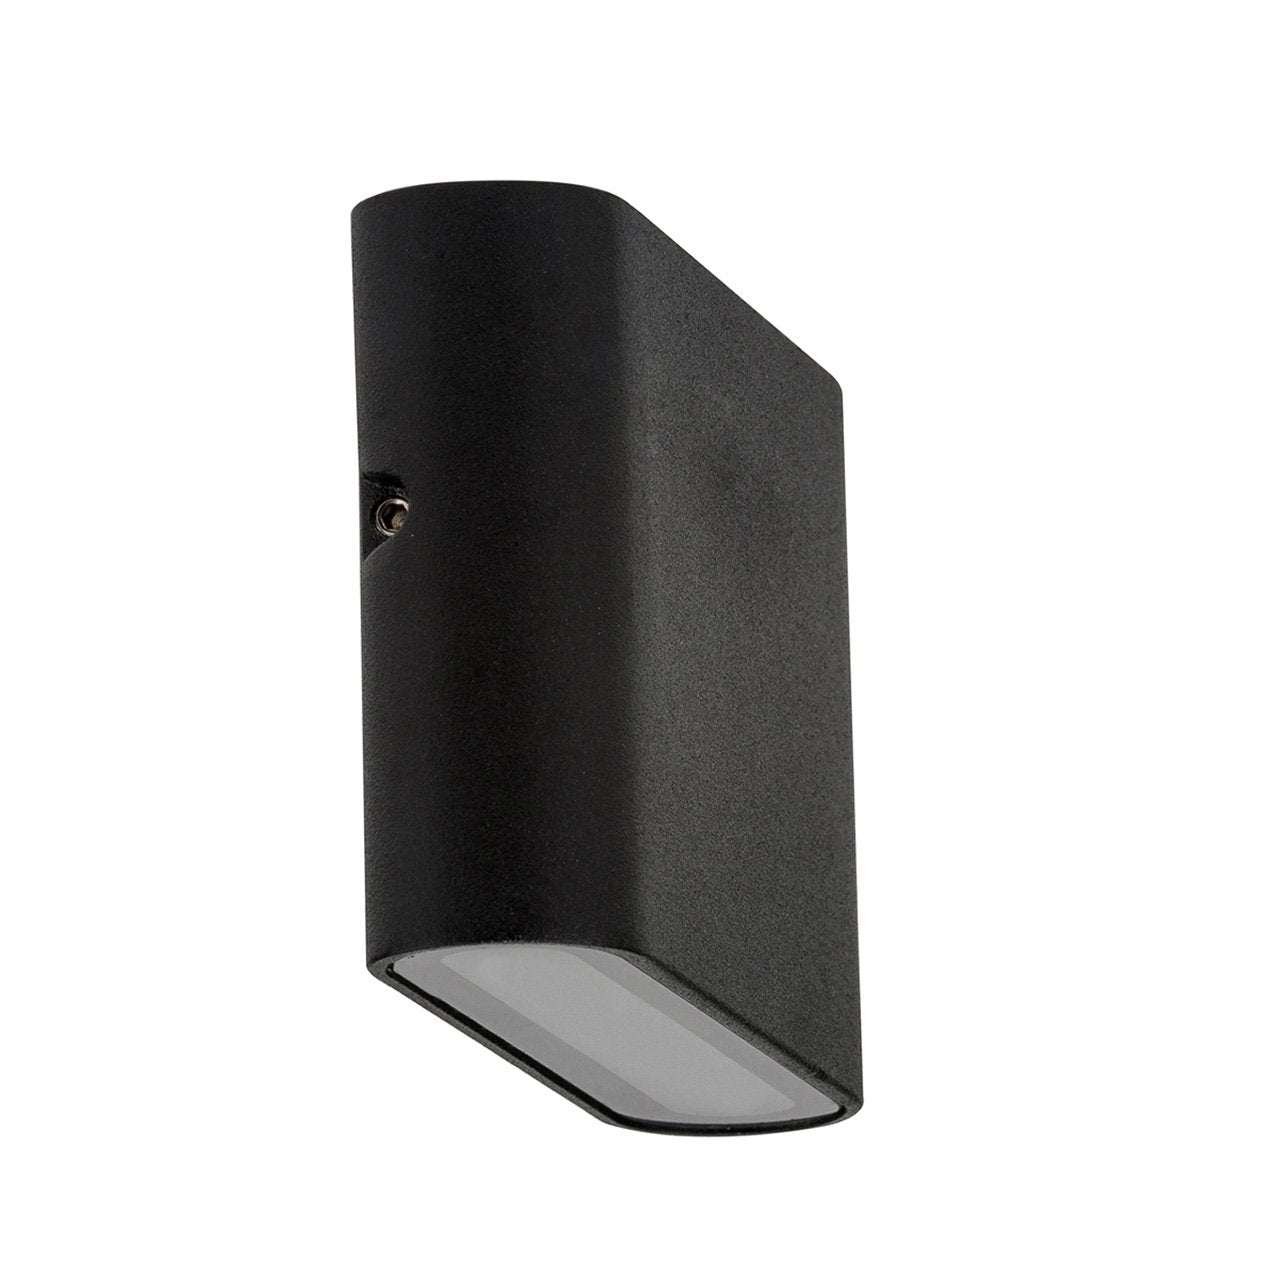 HV3641 Lisse Black Fixed Down LED Wall Light